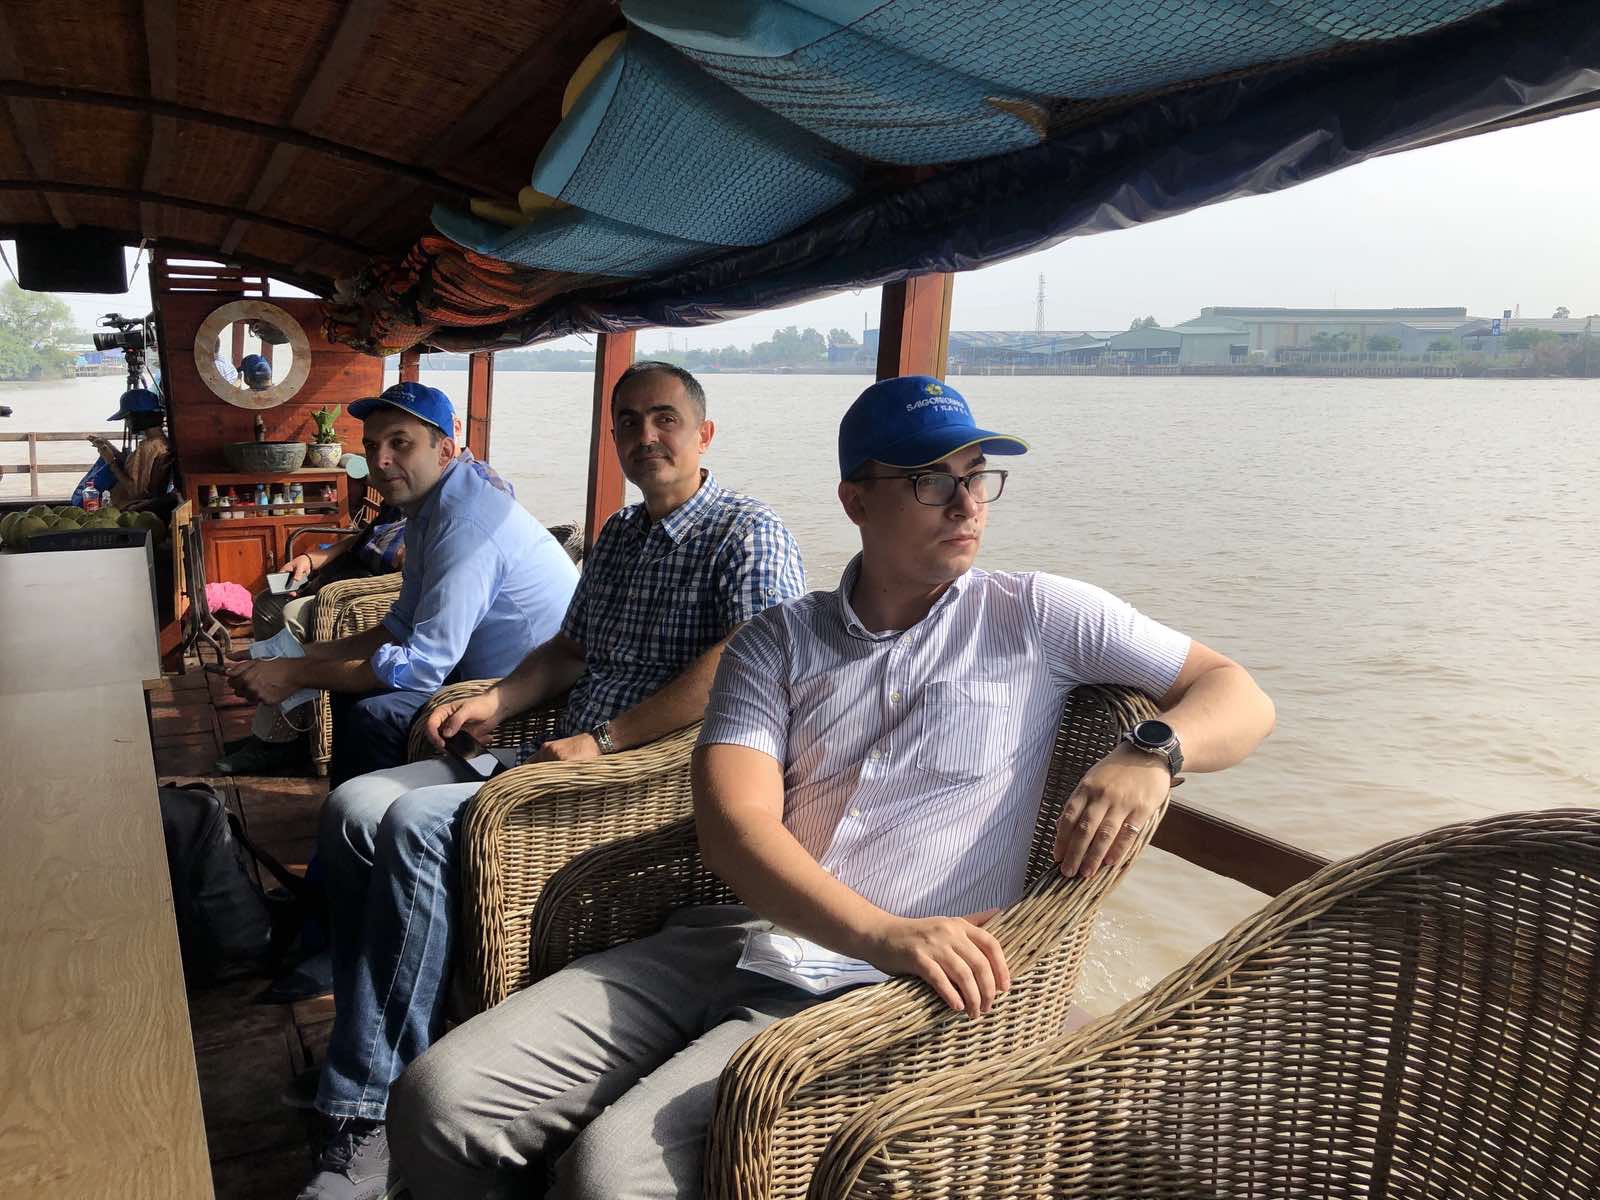 Lữ hành Saigontourist tổ chức tour hội nghị kết hợp tham quan cho khách ngoại - 3